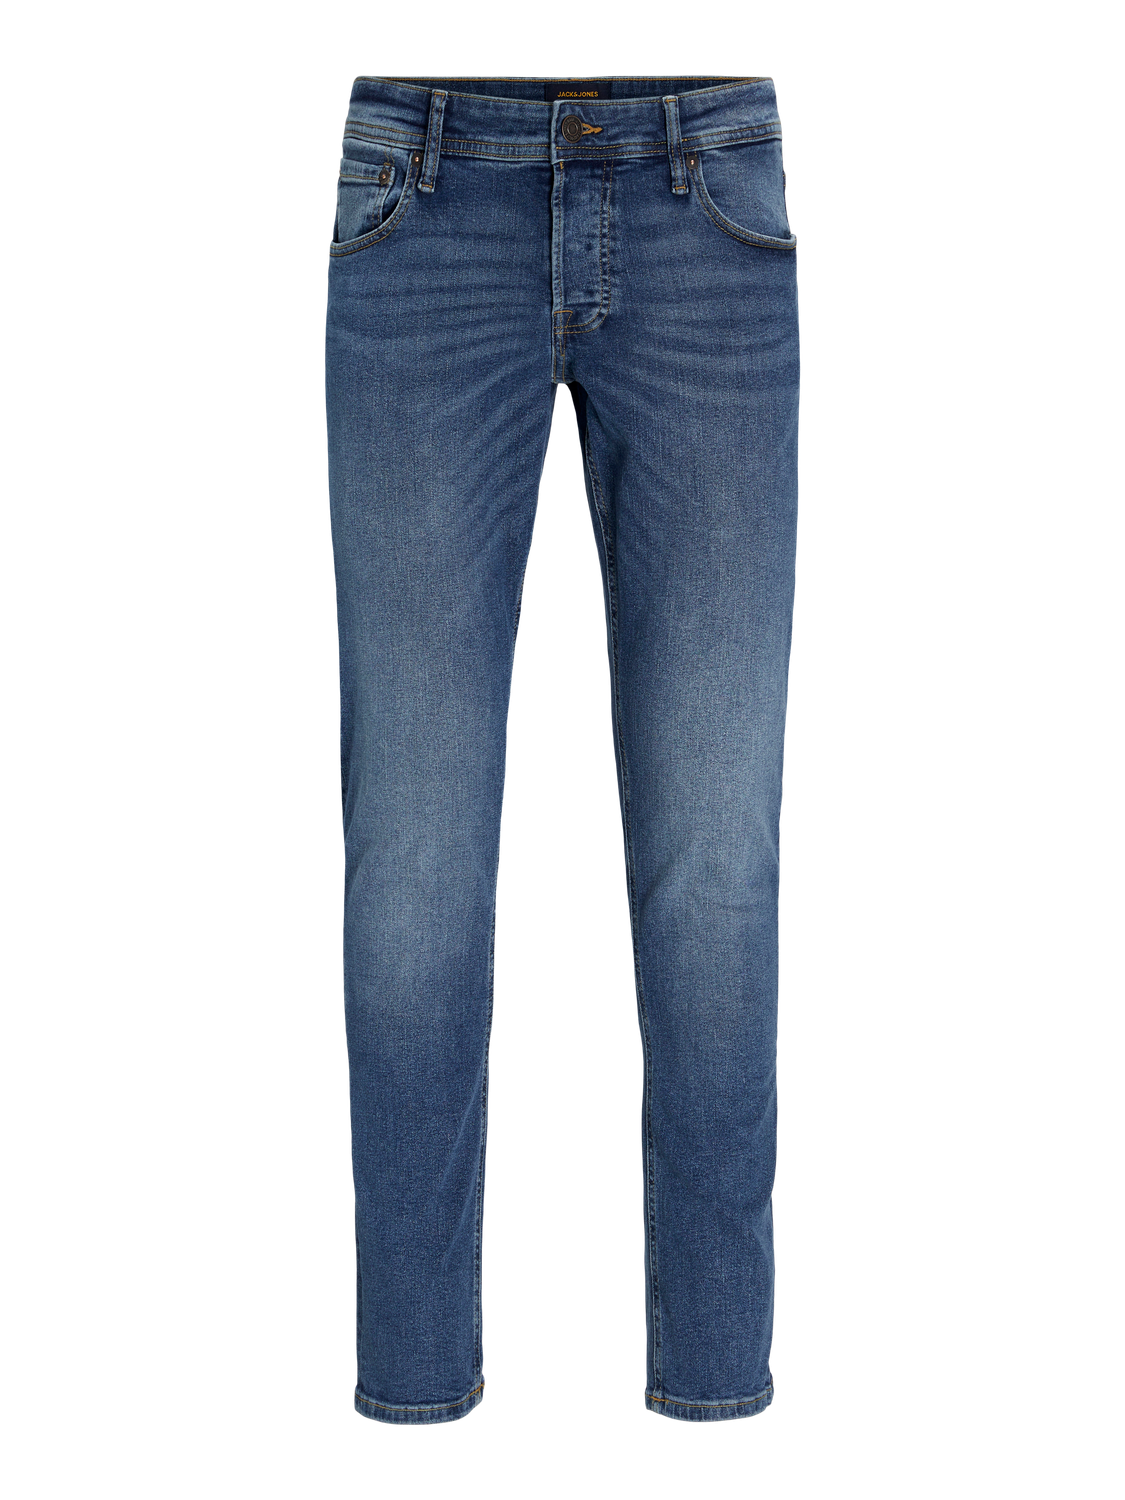 JJIGLENN JJORIGINAL MF 031 Slim fit jeans, Medium Blue